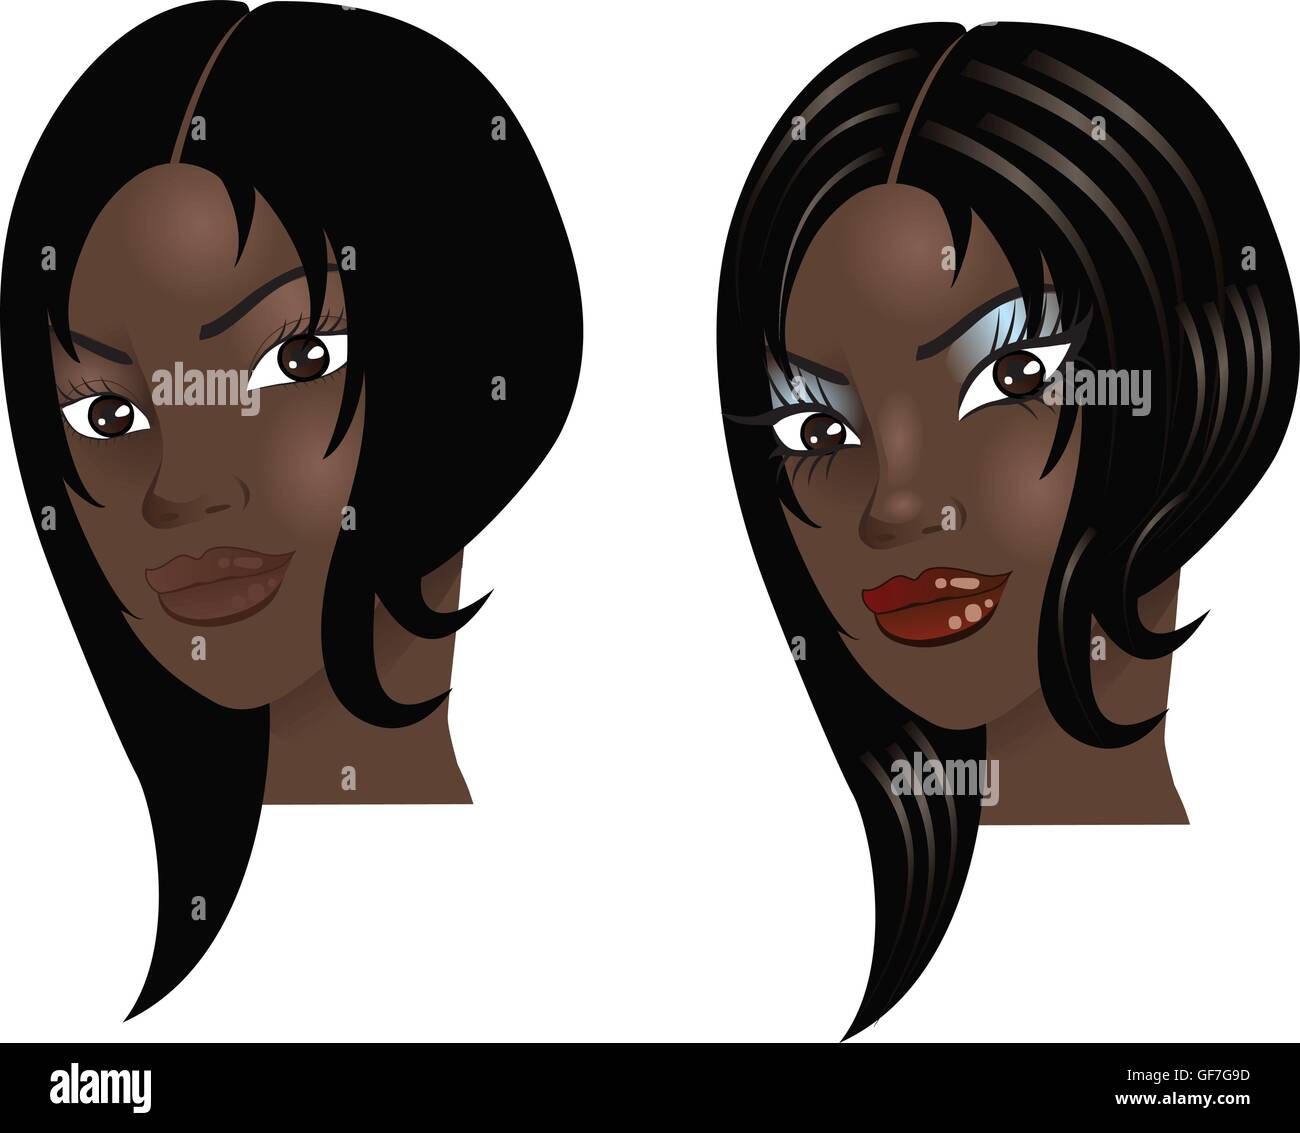 Vektor-Illustration einer Frau mit wenig oder gar kein Make-up, natürliche vor und nach dem Styling. Stock Vektor